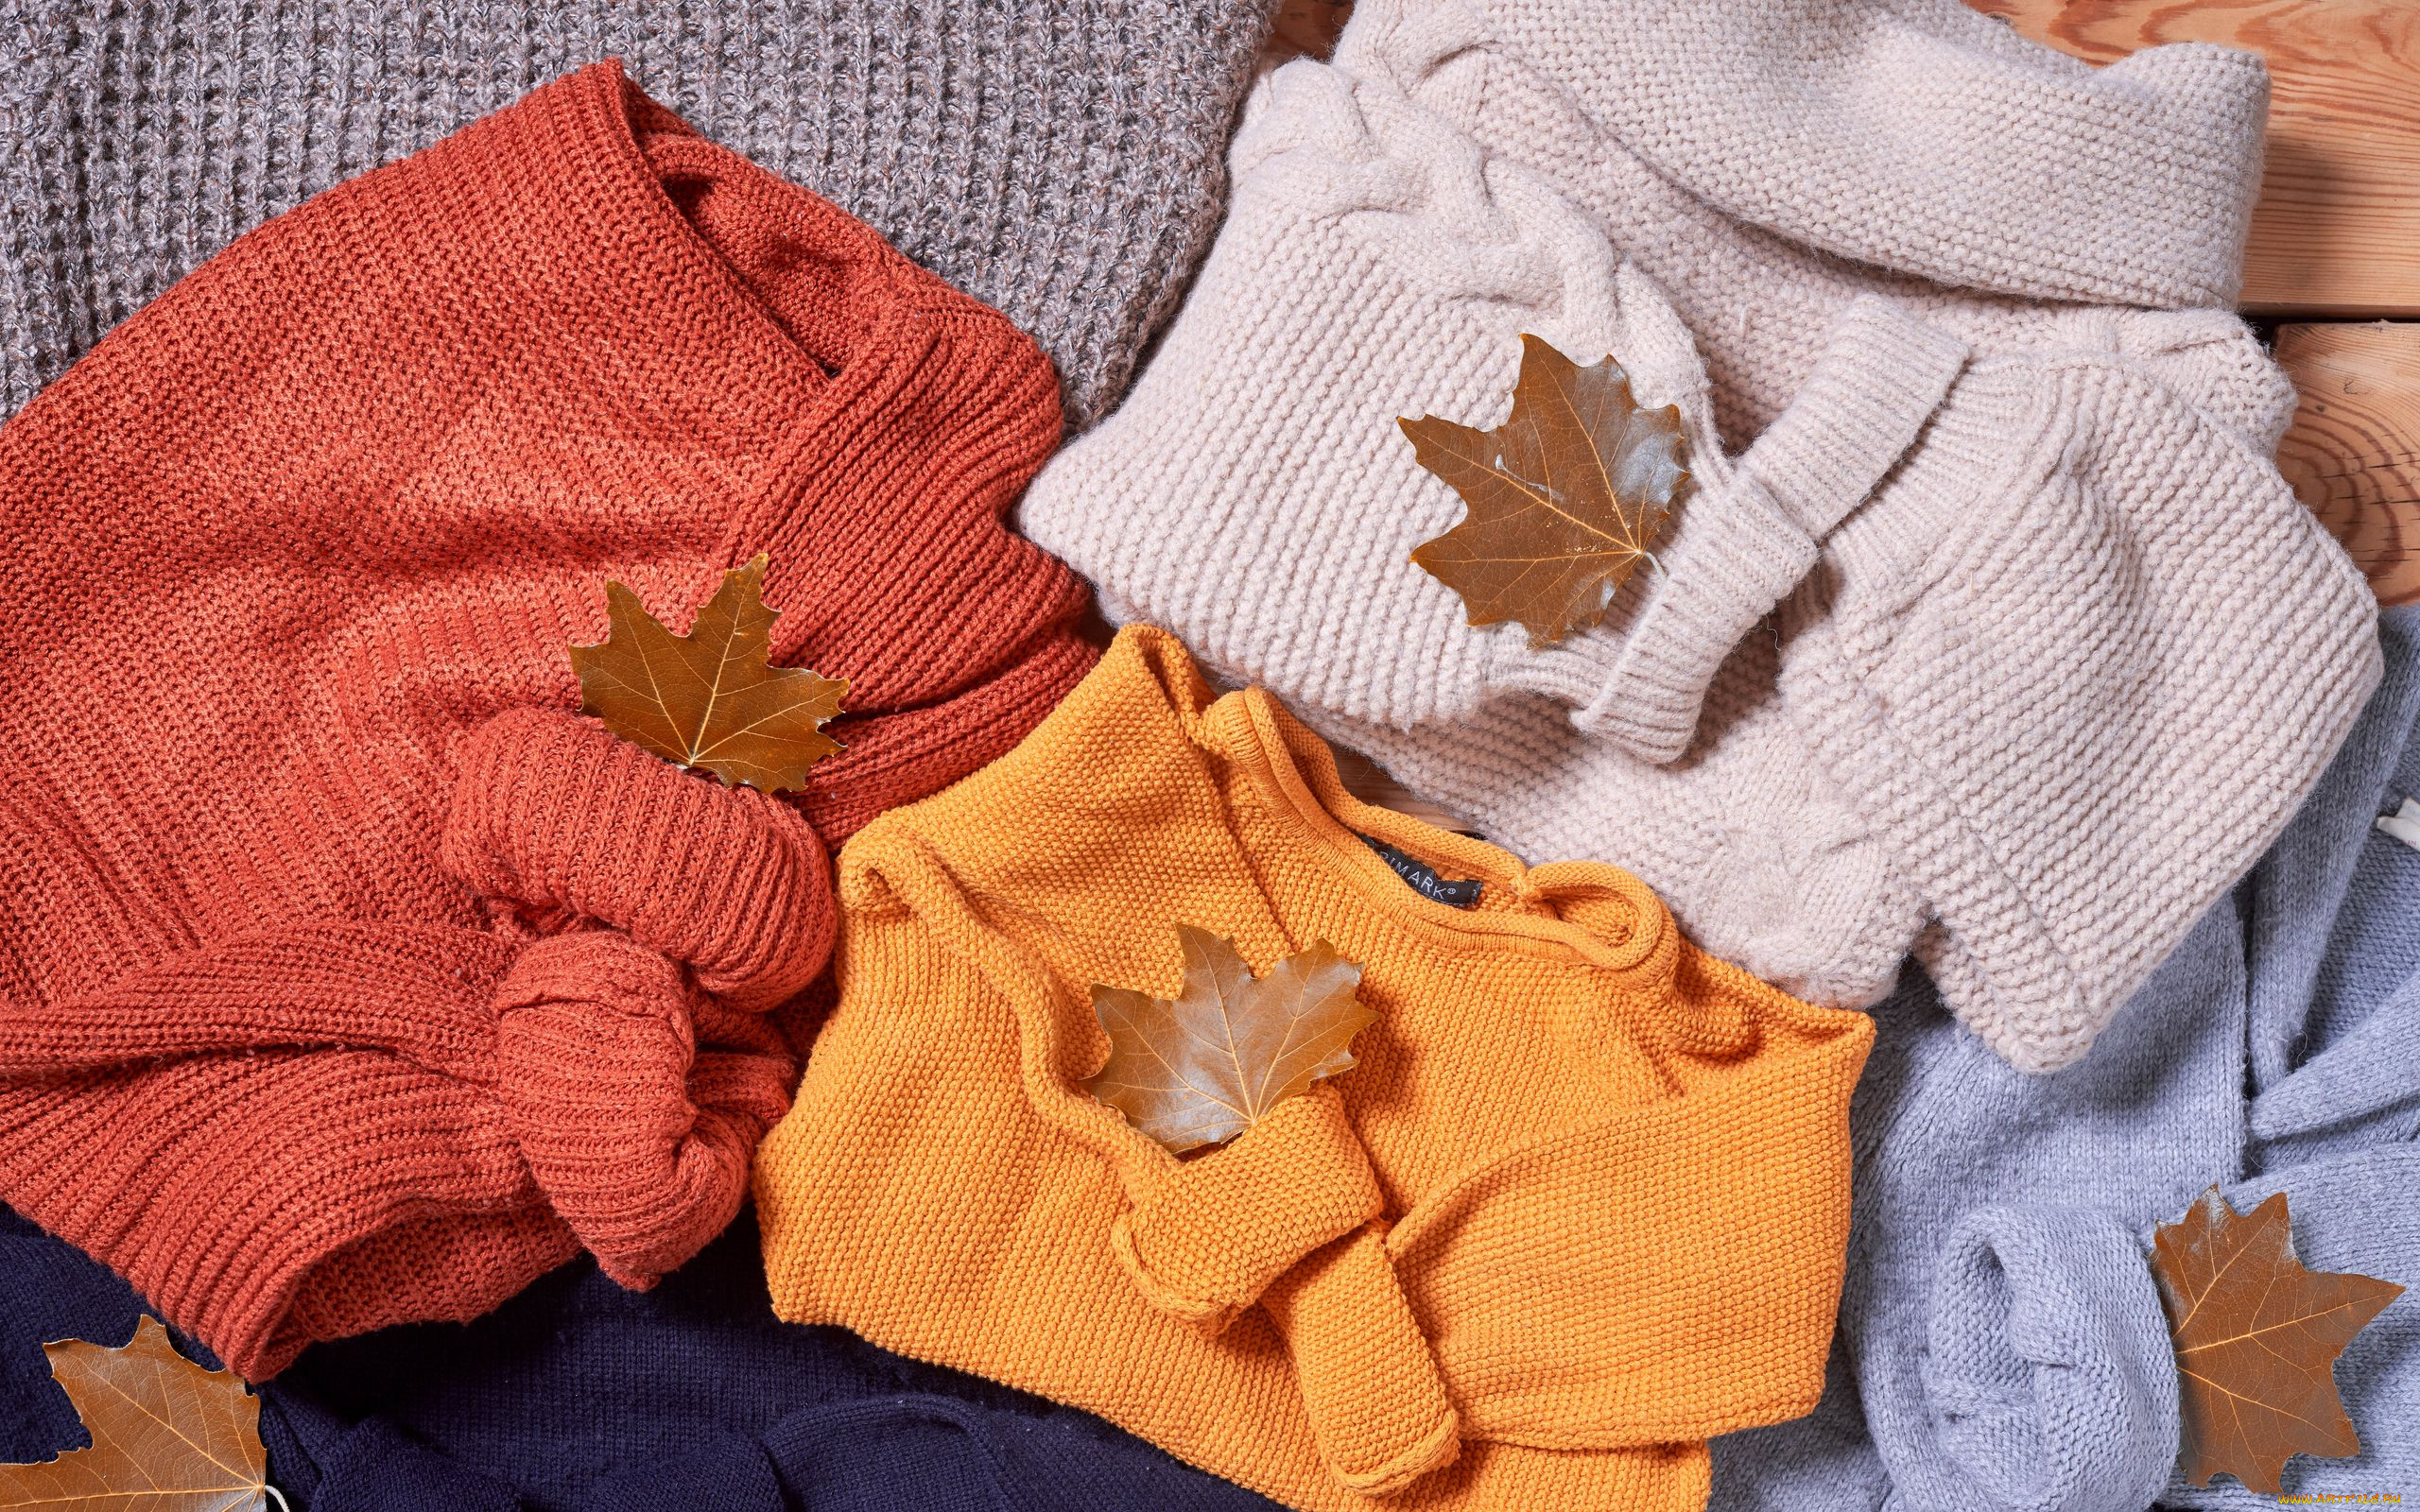 разное, одежда, , обувь, , текстиль, , экипировка, свитера, листья, осень